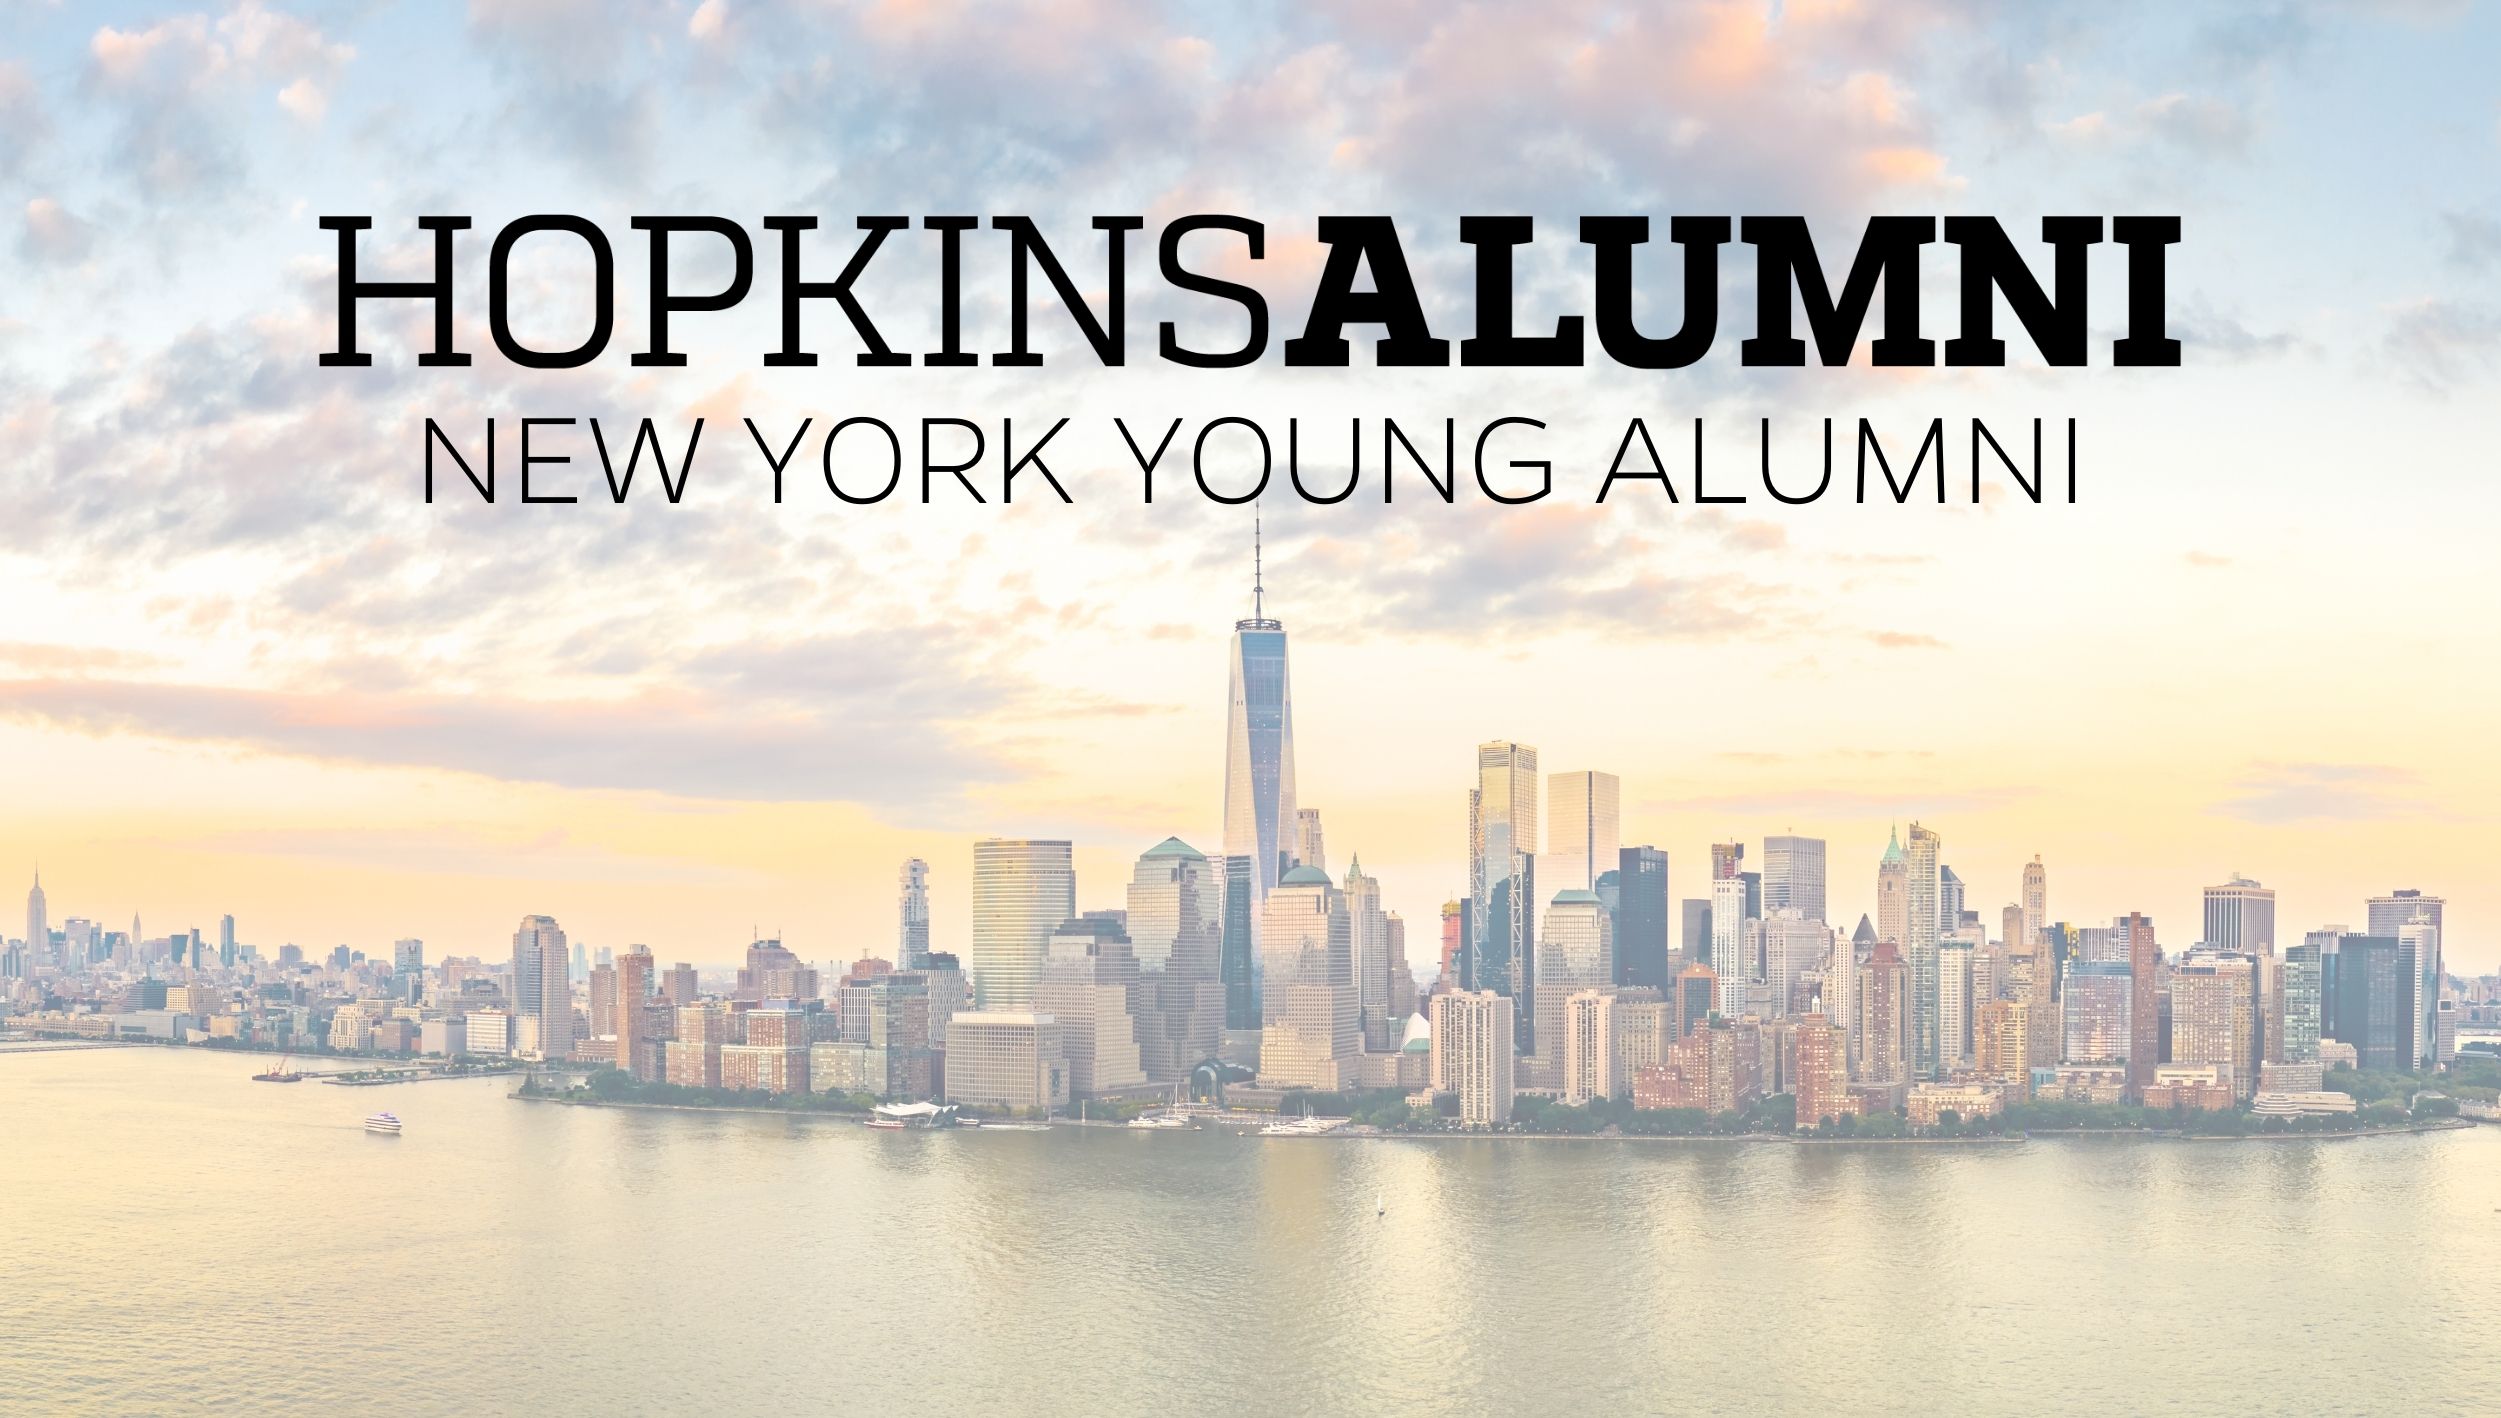 New York Skyline, Hopkins Alumni New York Young Alumni